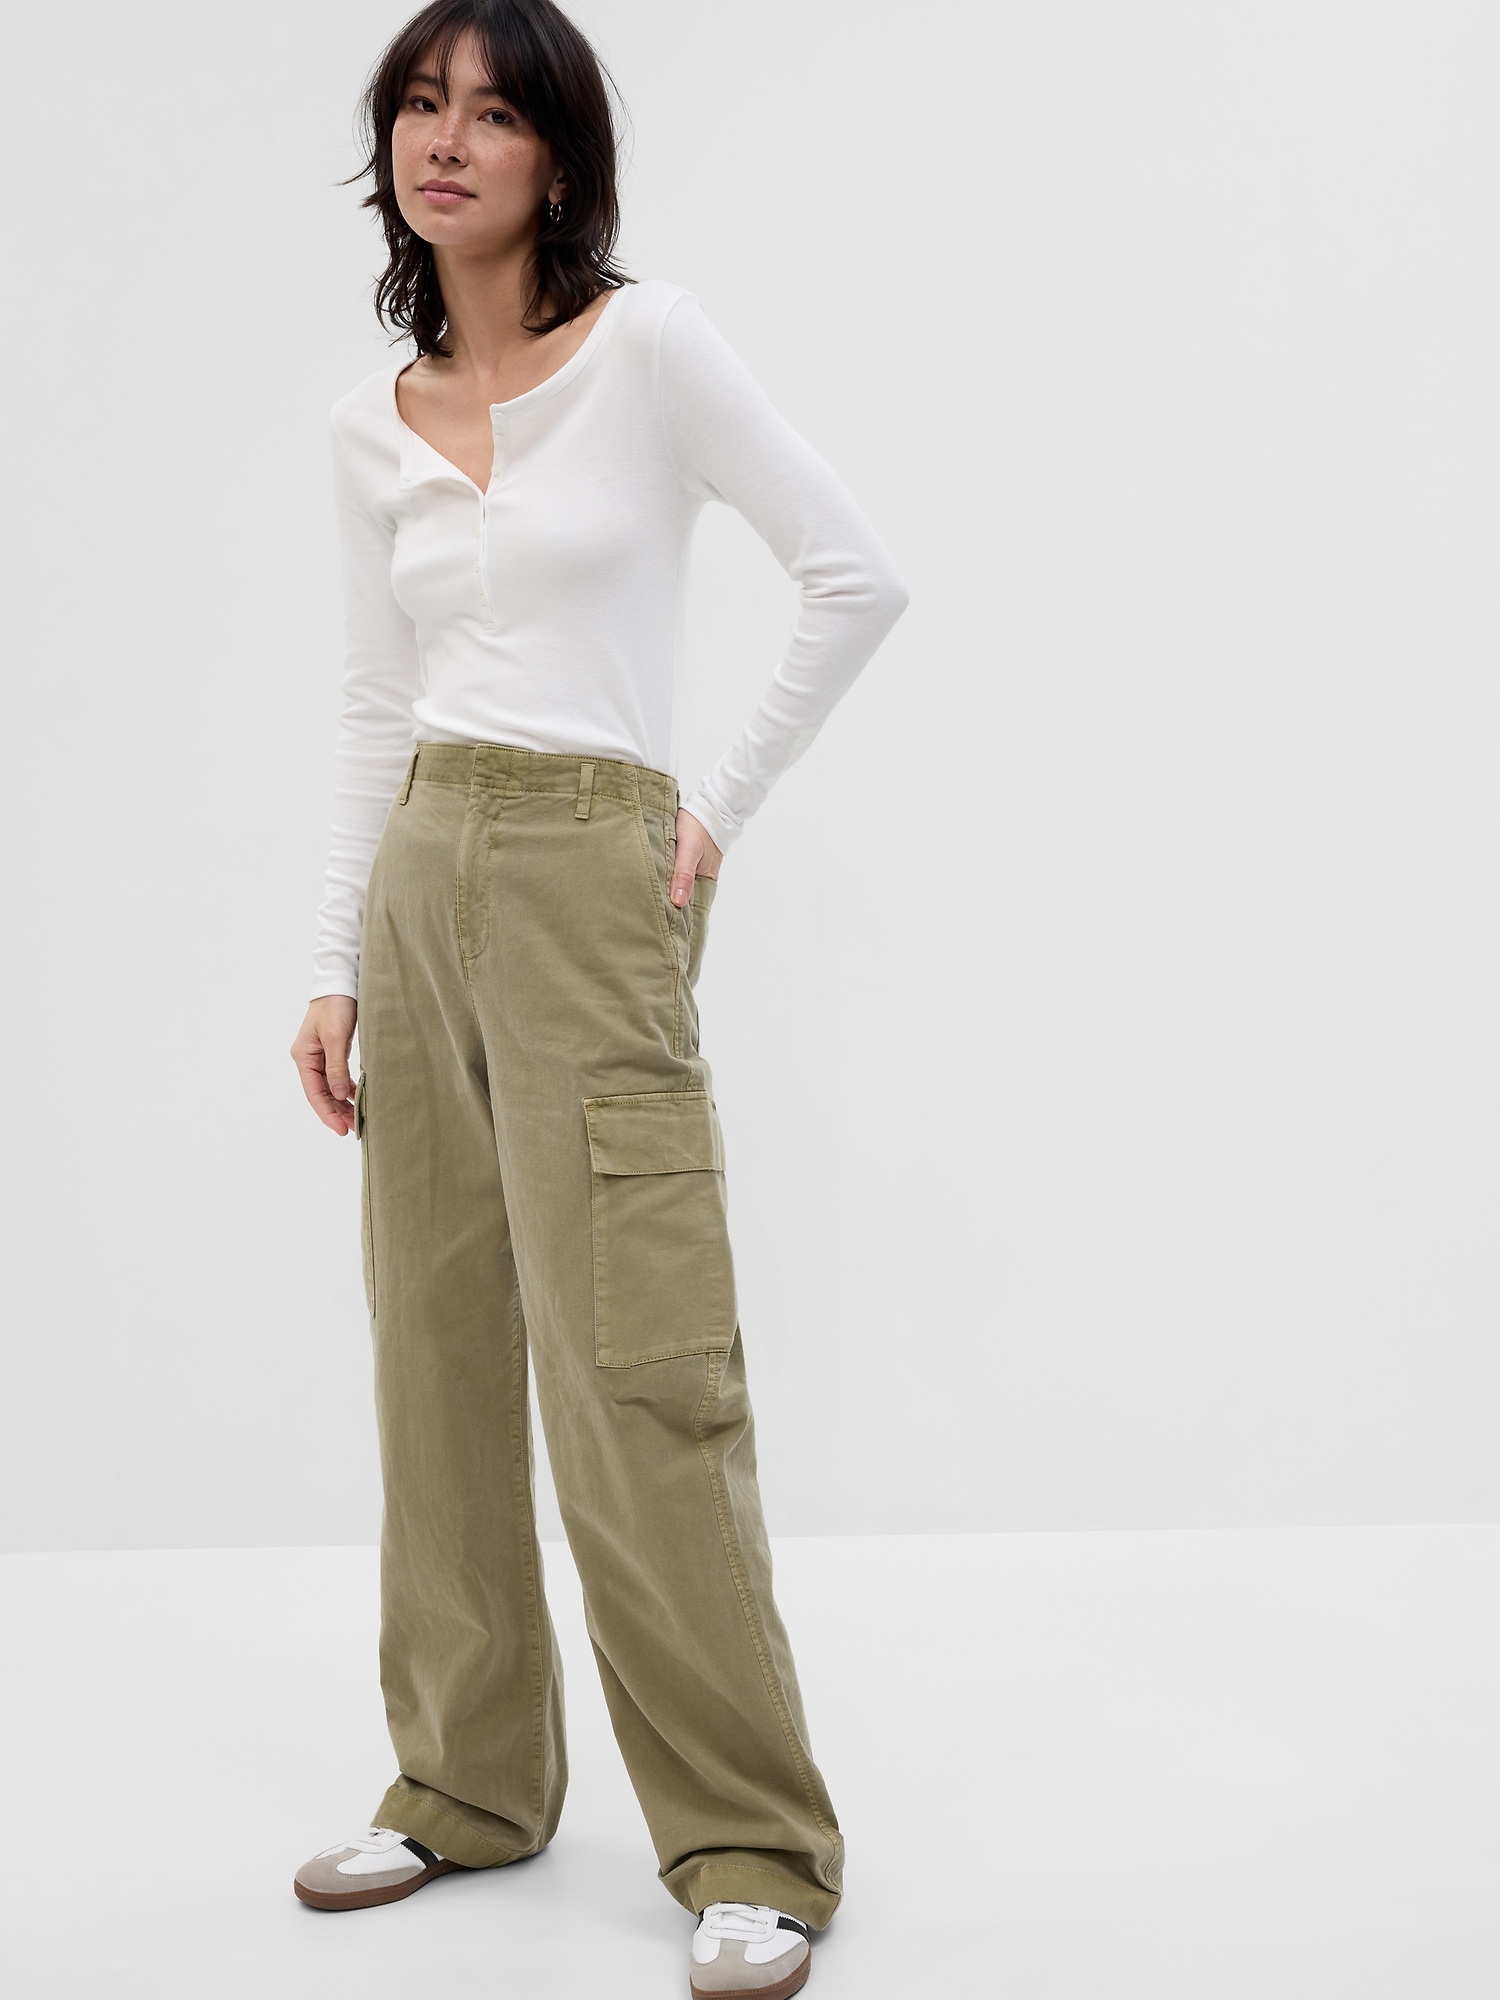 Khaki Pants Women Streetwear, Khaki Cargo Pants Women